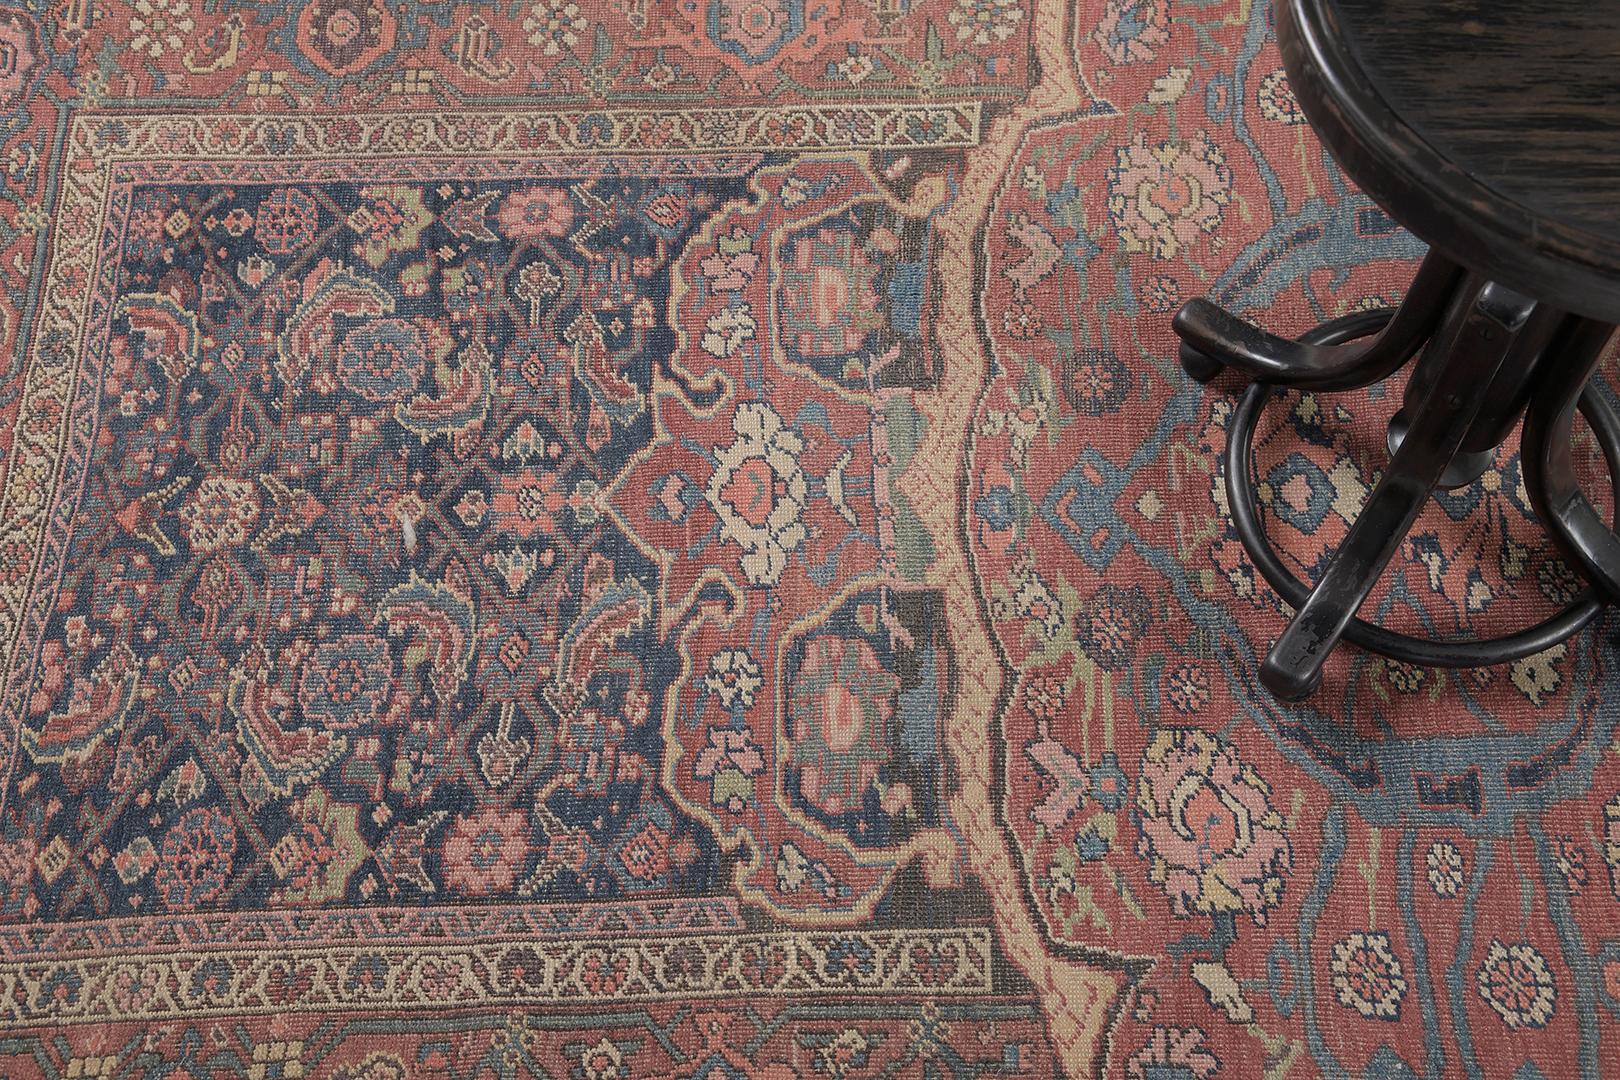 Un tapis persan ancien Bidjar fascinant qui présente divers éléments botaniques de palmettes luxuriantes, de motifs herati et de vignes sinueuses dans les magnifiques tons de bleu marine, de vieux rose et de beige. Ce tapis phénoménal charme sans